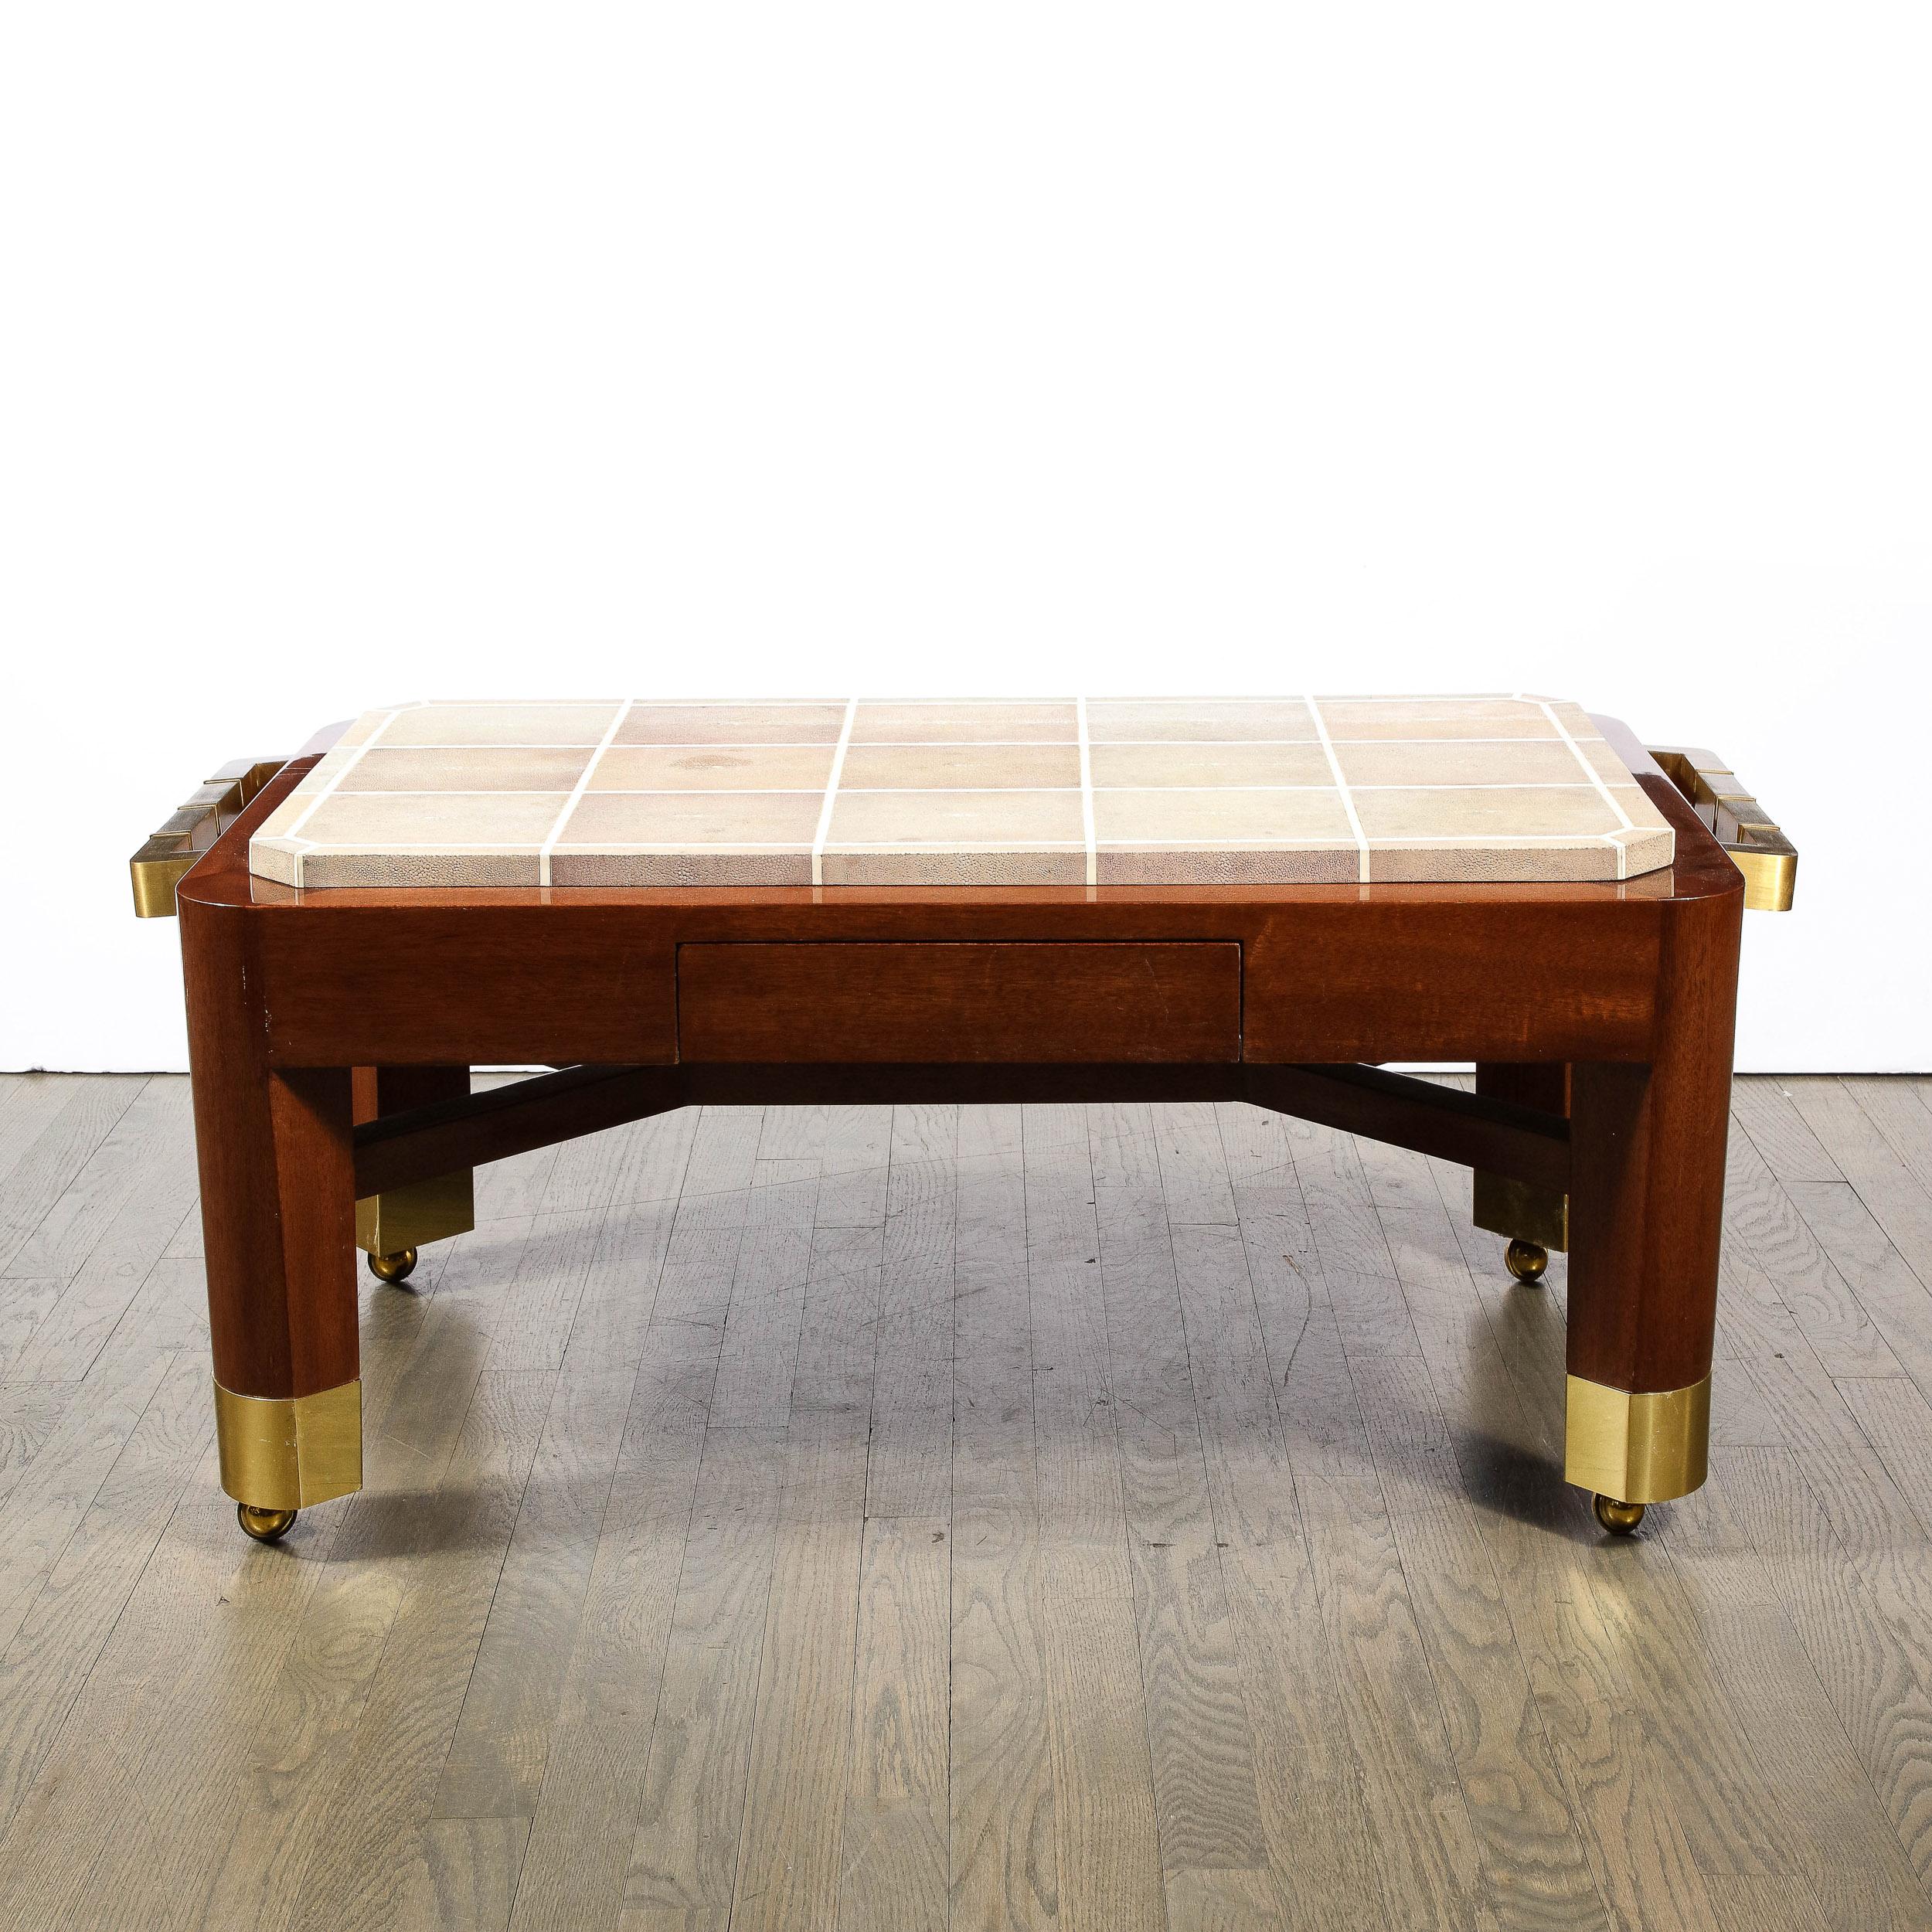 Cette étonnante et spectaculaire table de cocktail moderniste a été réalisée par l'estimable designer du 20e siècle Lorin Marsh aux États-Unis vers 1987. Montée sur des roulettes en laiton, la pièce offre une forme cylindrique en acajou.  Les pieds